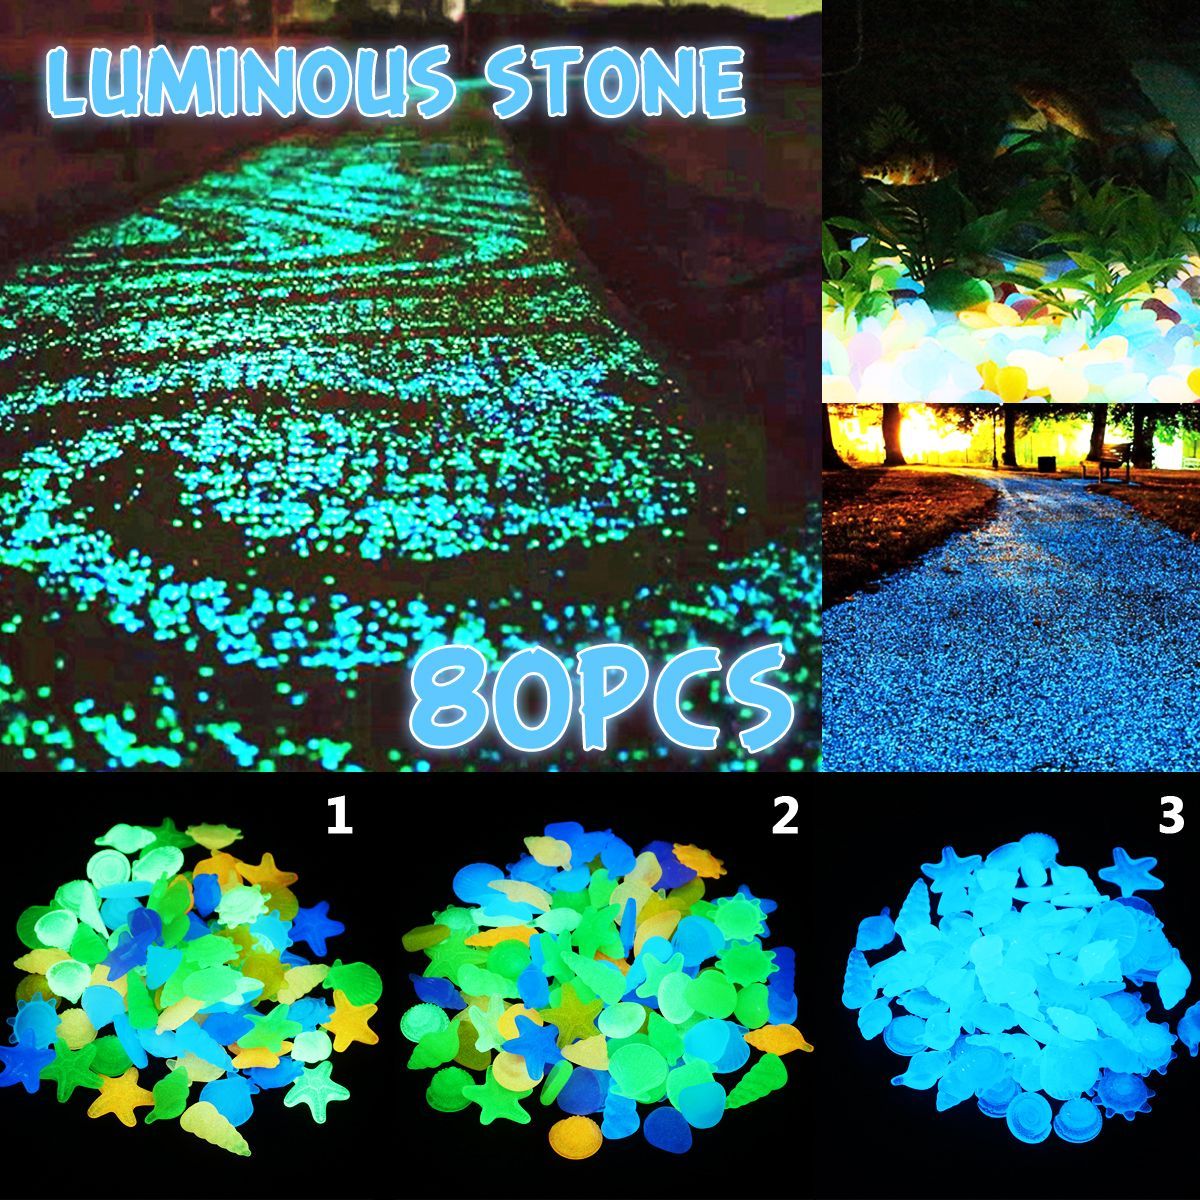 80Pcs-Luminous-Artificial-Stone-Aquarium-Fish-Tank-Decorations-Accessories-Marine-Animals-Ornament-1537416